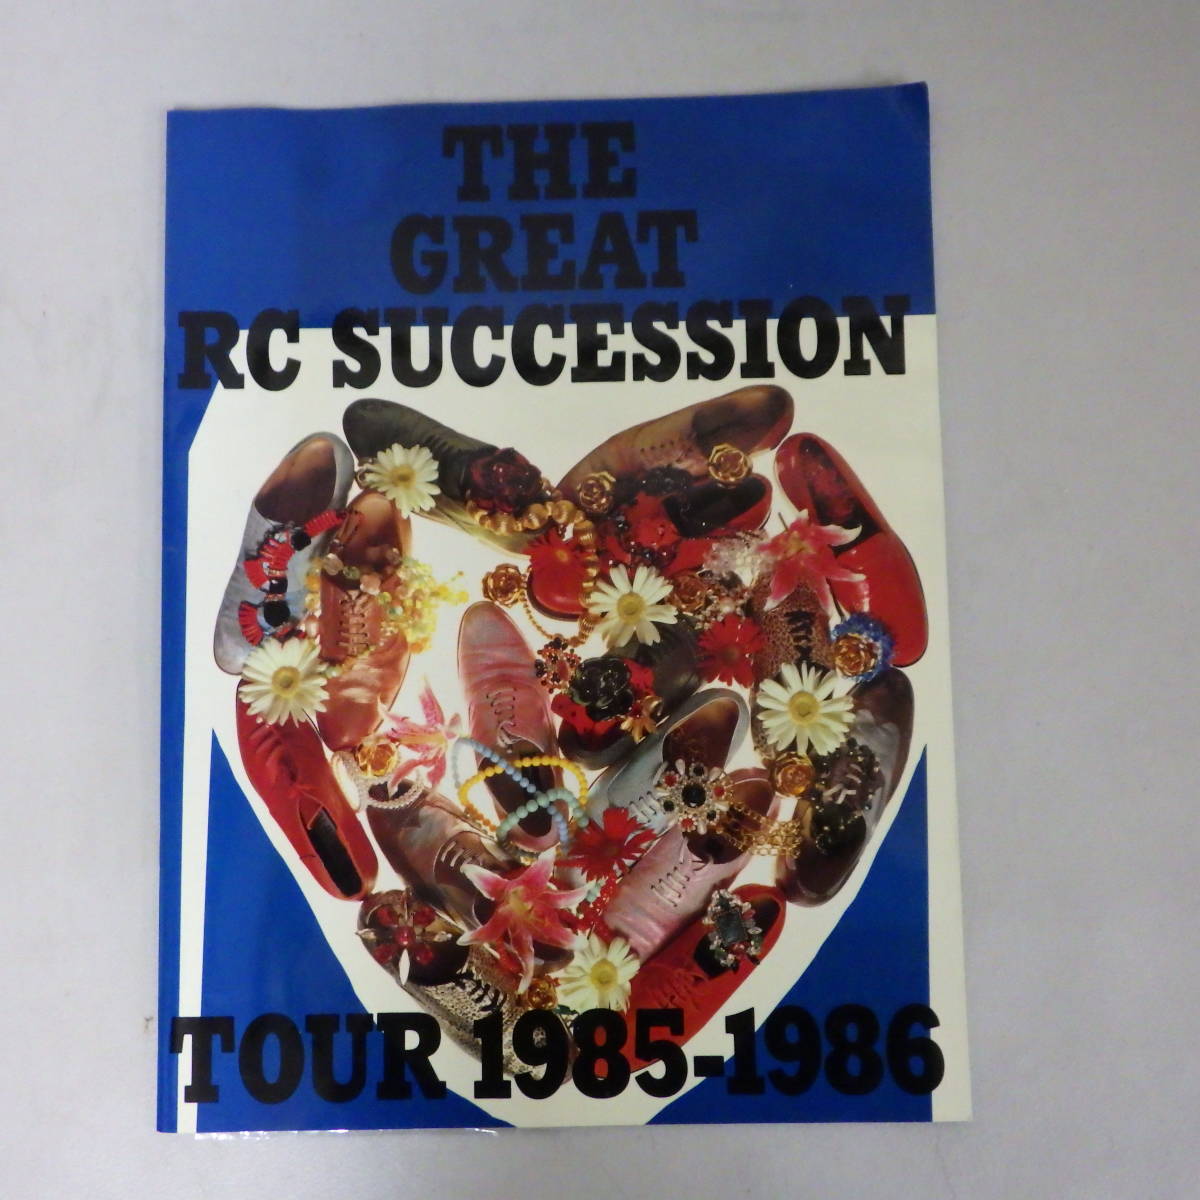 THE GREAT RC SUCCESSION ツアー パンフレット 1985-1986 RCサクセション ステッカー付_画像1